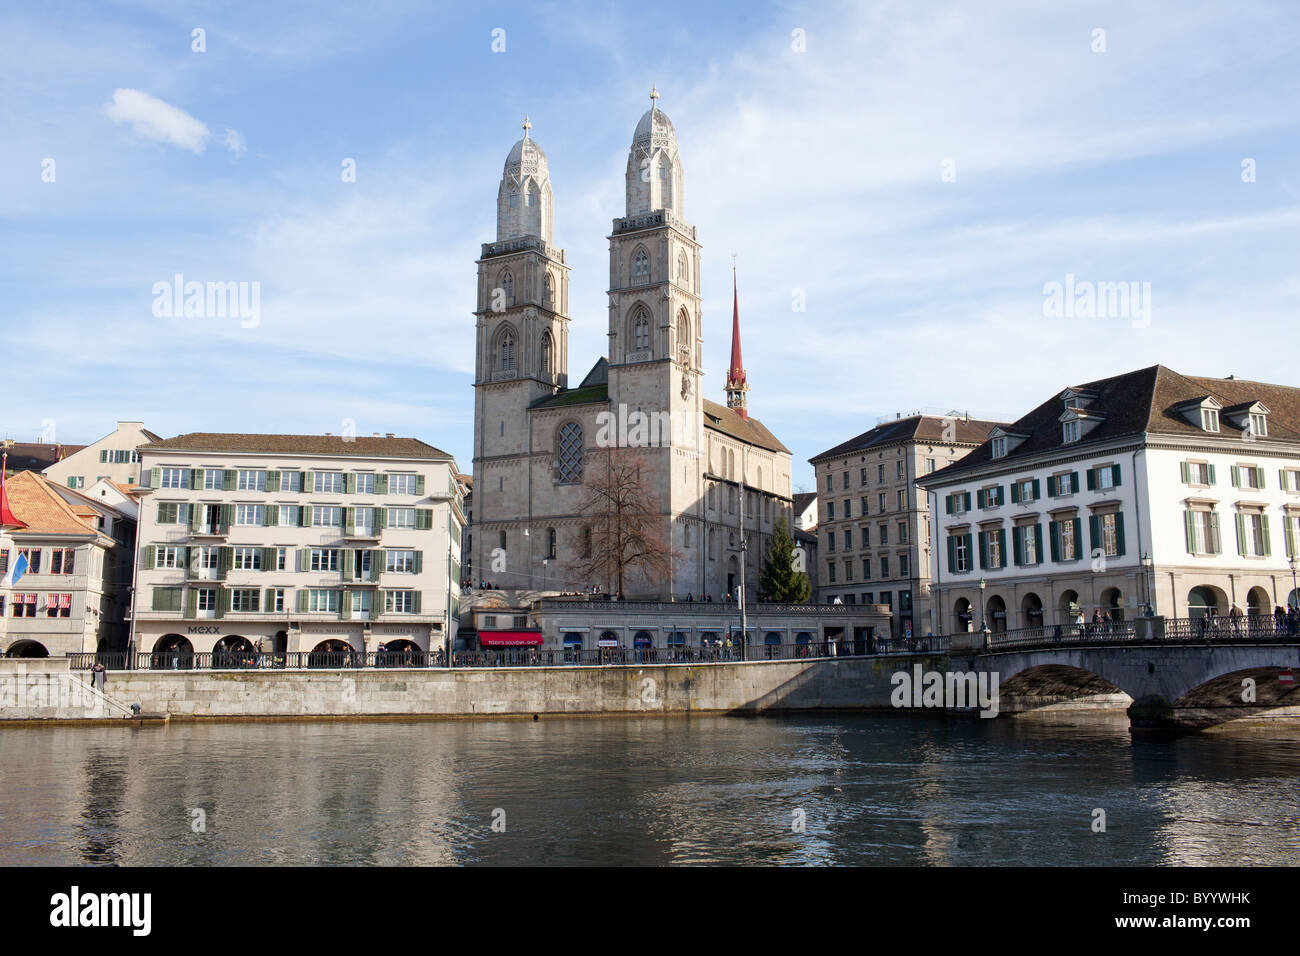 Grossmünster Cathedral, Zürich, Switzerland Stock Photo